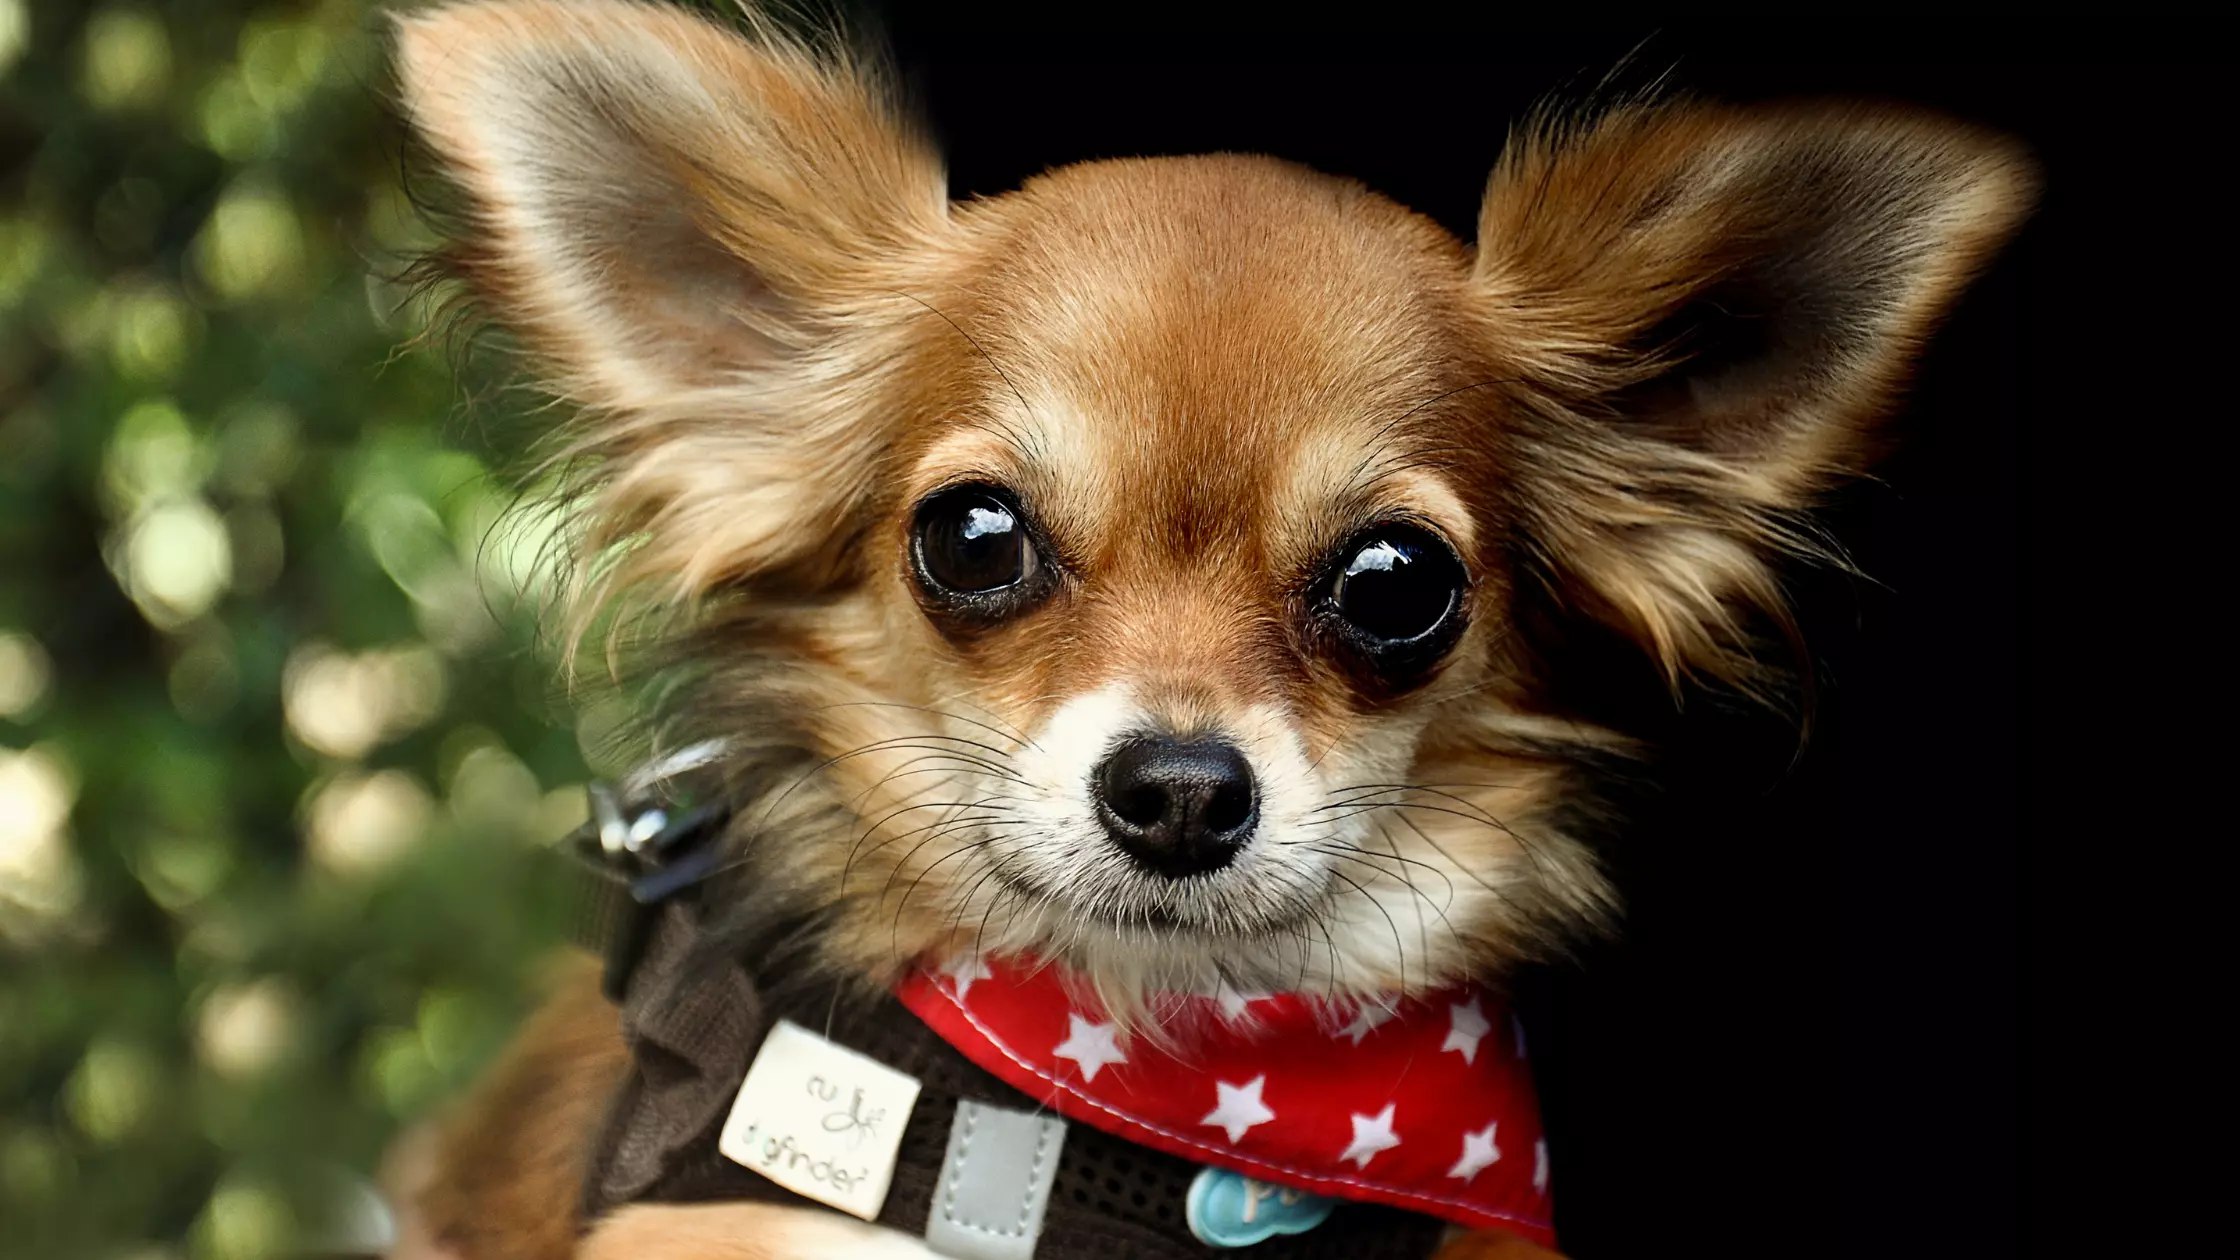 Chihuahua jak karmić Jaka karma dla chihuahua opiekun wyprowadzanie psów domowy hotel dla psów opieka nad zwierzętami karmienie psów pethomer